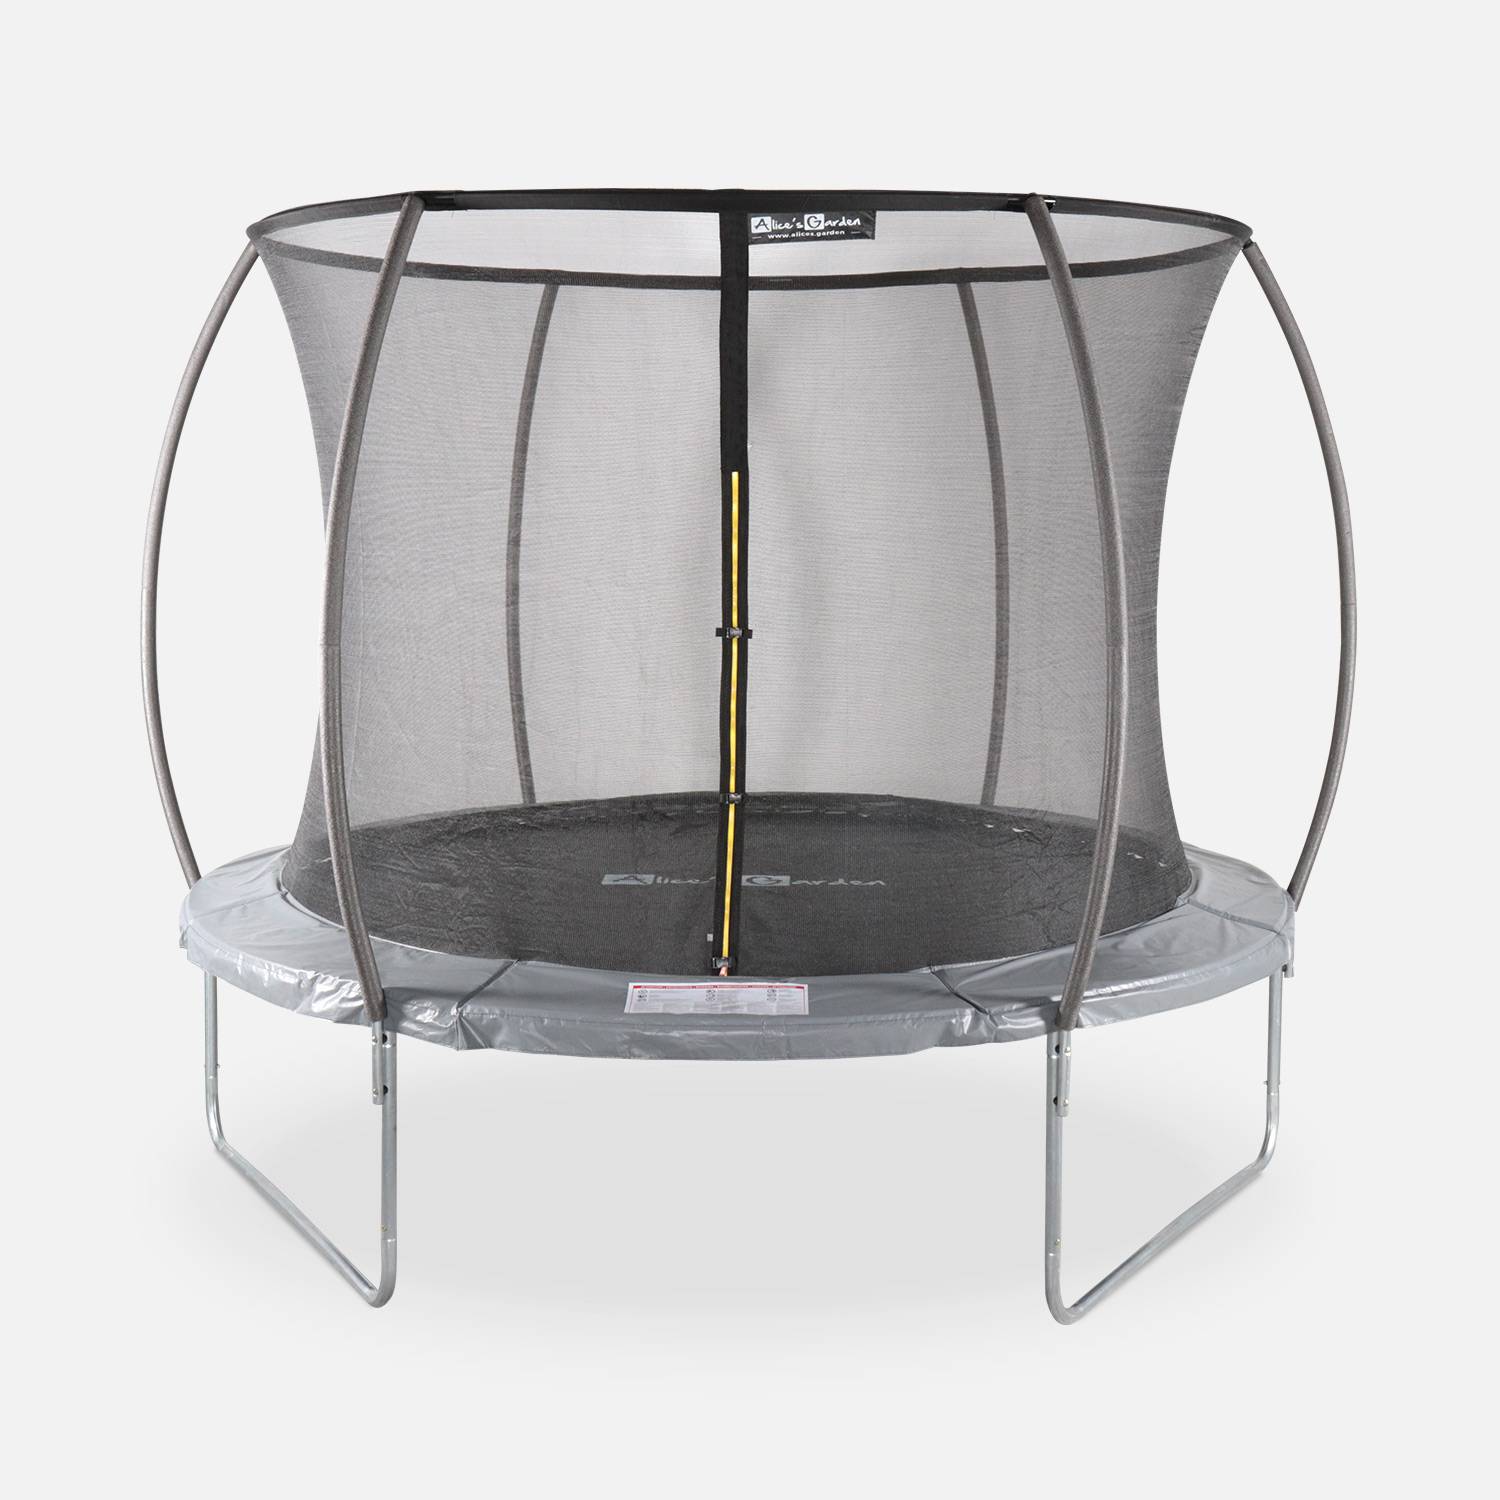 Cama elástica redonda 305 cm gris con red de seguridad interna - Mars INNER - Nuevo modelo - cama elástica de jardín 3,05 m 305 cm | Calidad PRO. | Normas de la UE. Photo1